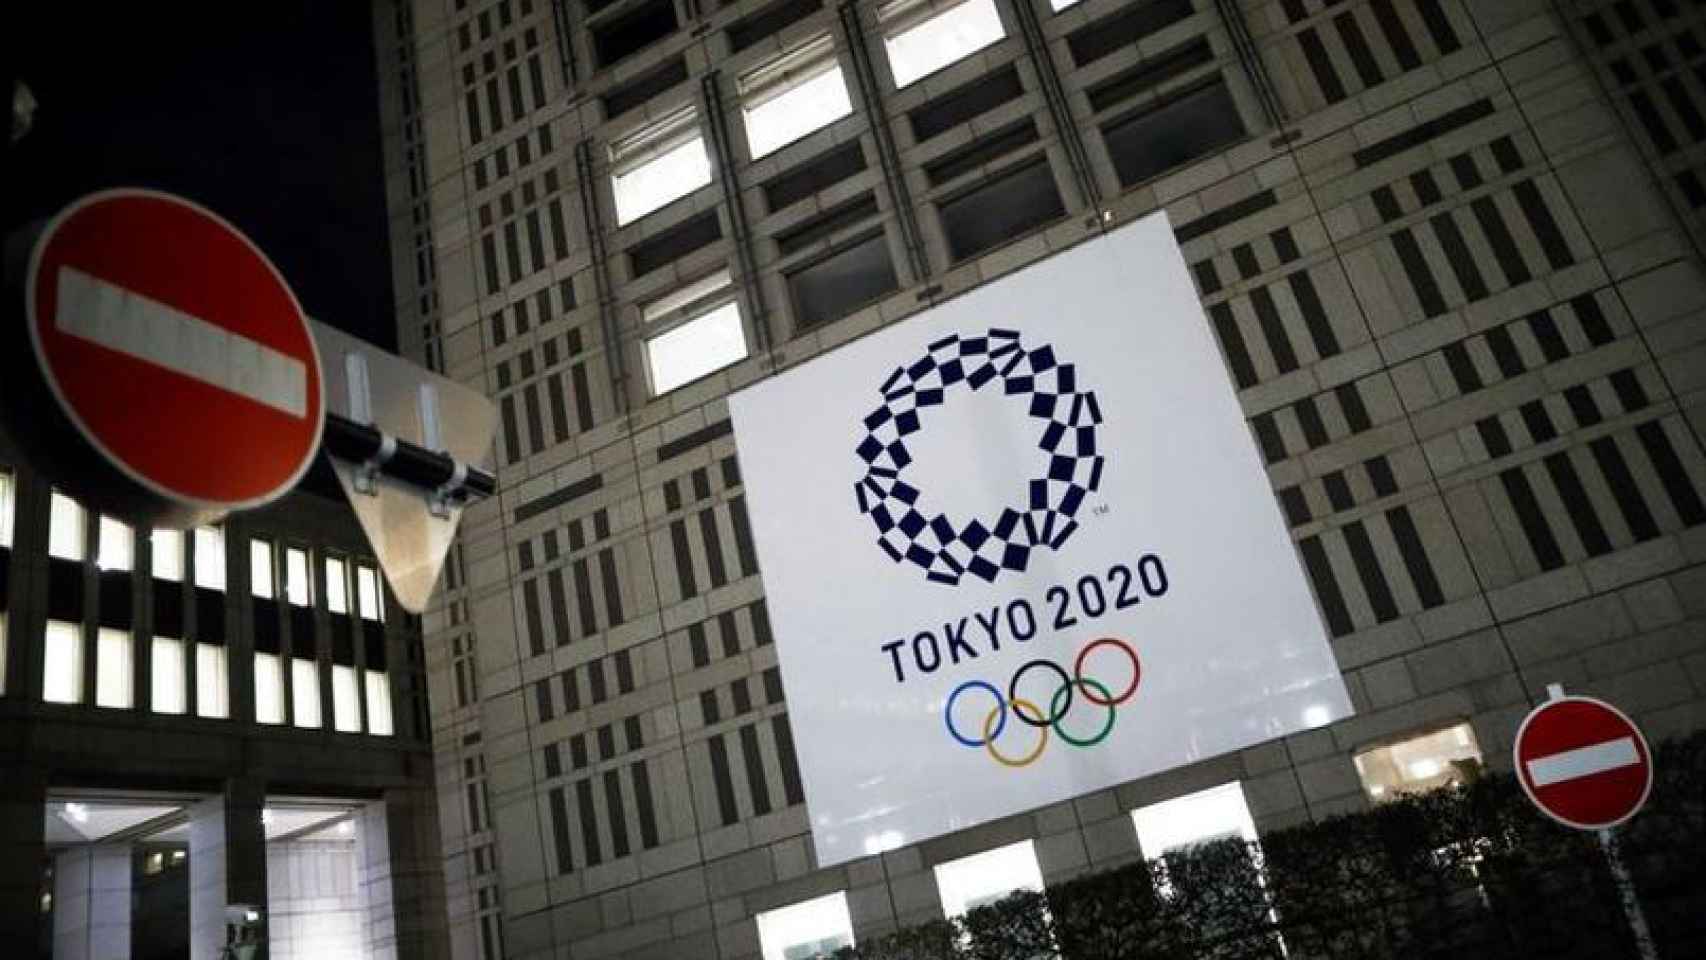 Cartel de Tokio 2020 en la fachada de un edificio